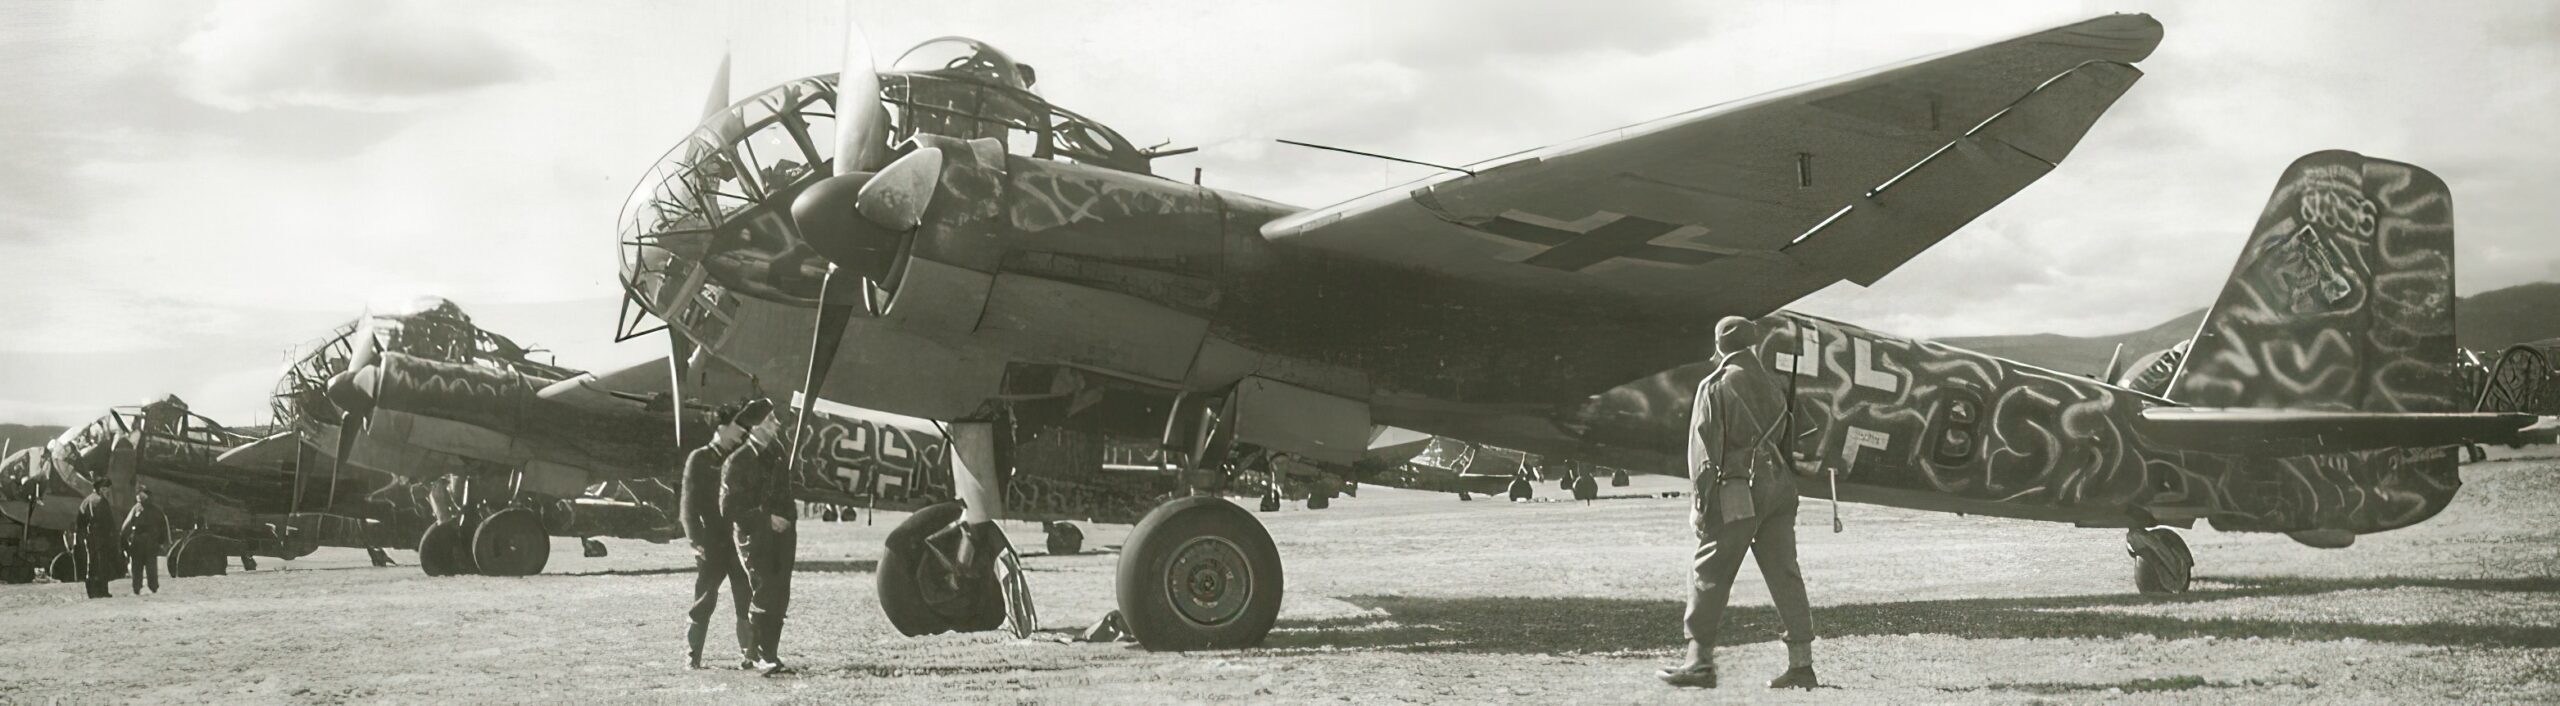 Junkers Ju 188 